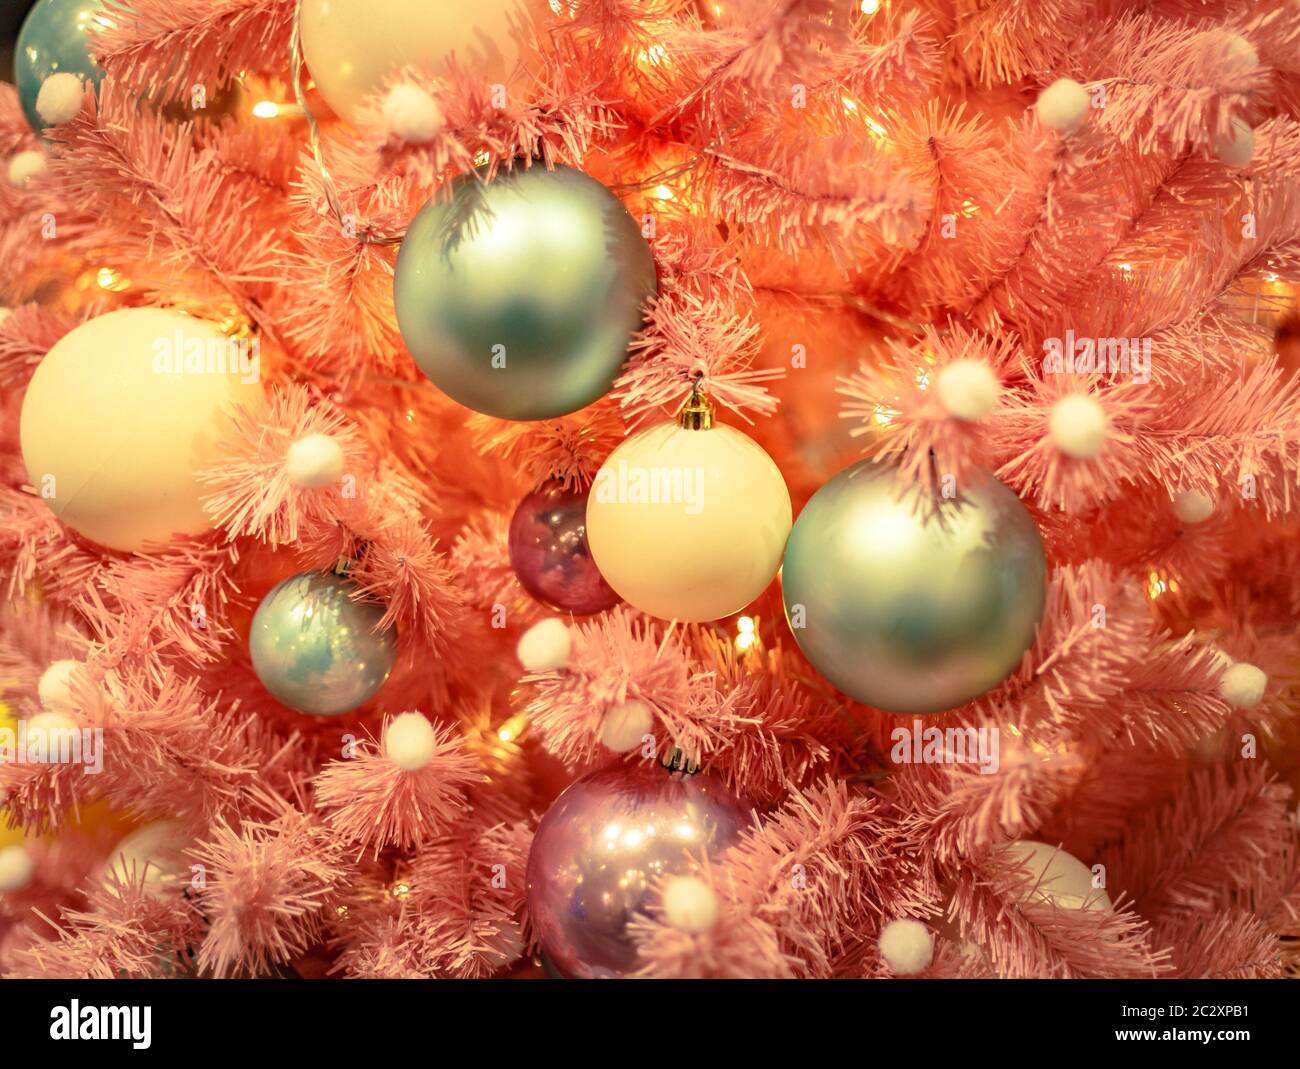 Weihnachtsbaum mit goldenen Kugeln Ornamente. Geschmückter Weihnachtsbaum aus der Nähe. Bälle und beleuchtete Girlande mit Taschenlampen. Neu Stockfoto